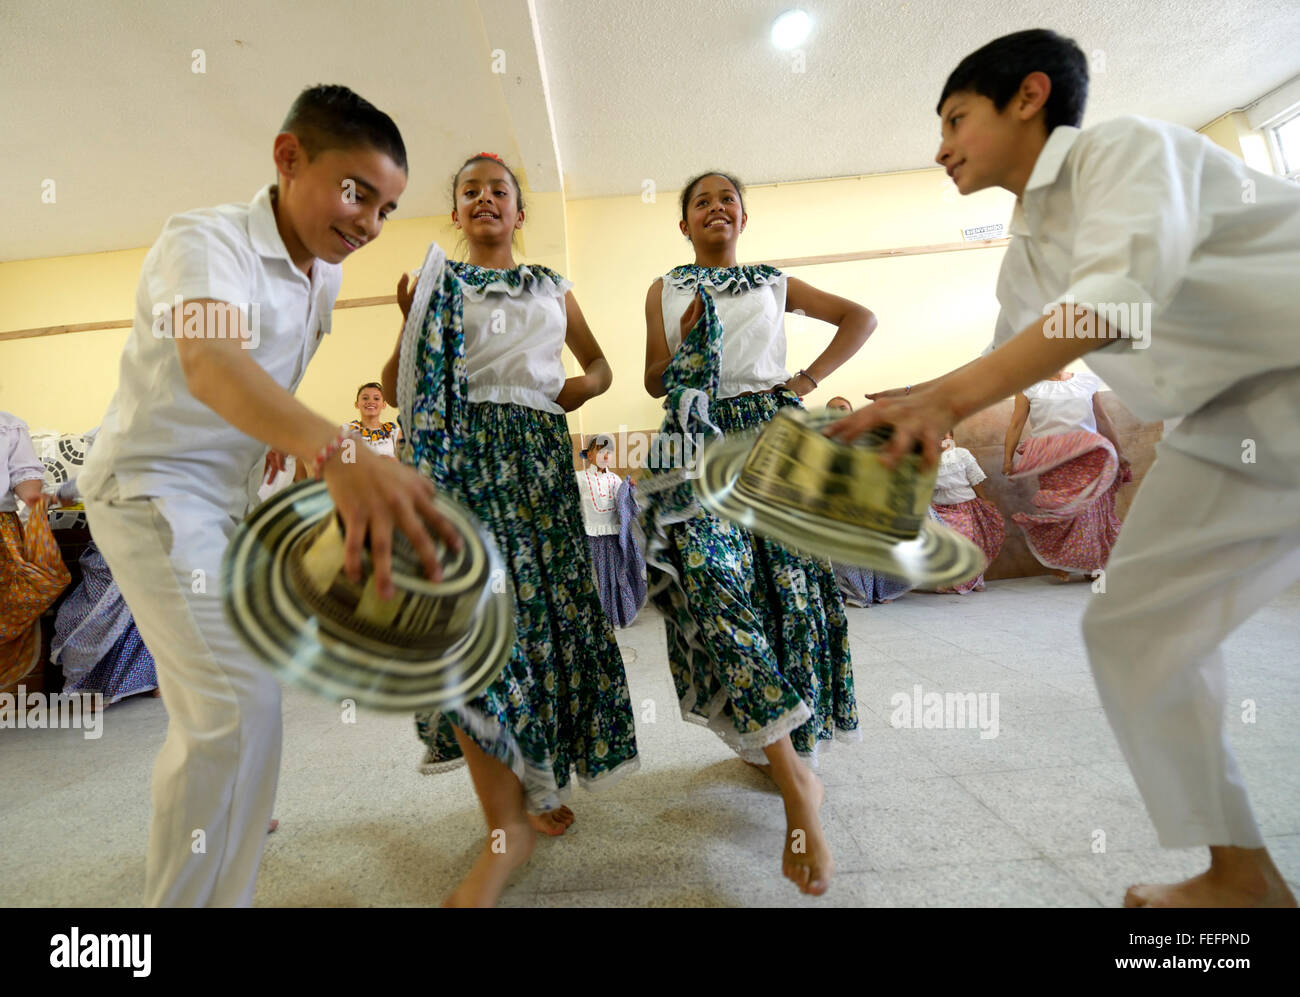 Les enfants, filles et garçons, groupe de danse, danse folklorique, danse traditionnelle, Barrio San Martín, Bogotá, Colombie Banque D'Images